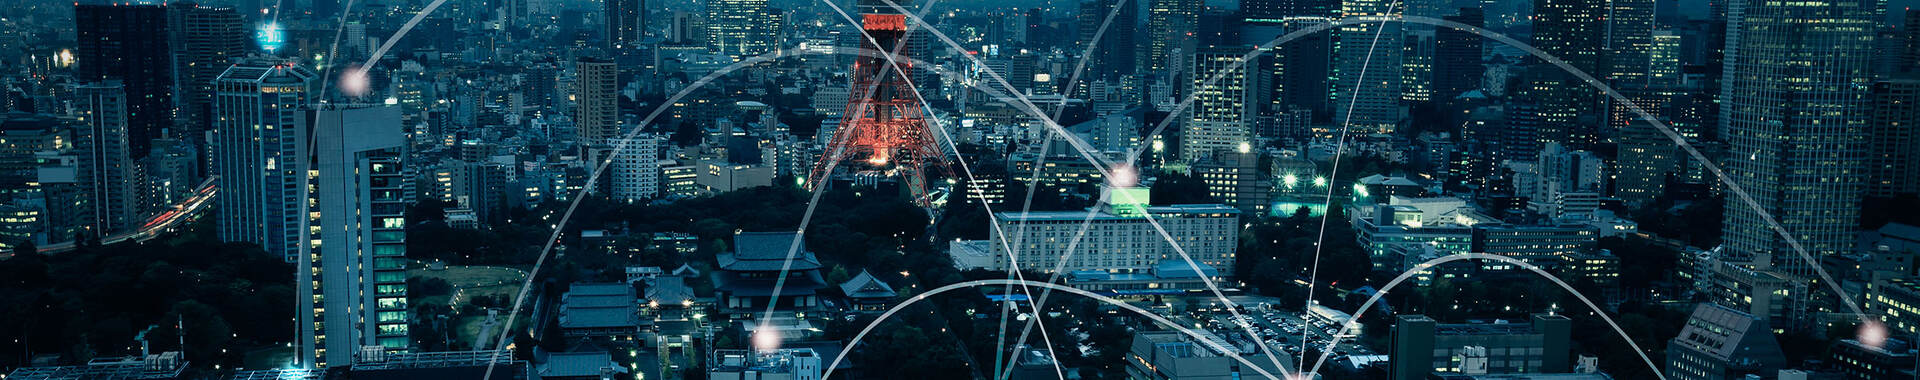 ネットワークが広がる東京